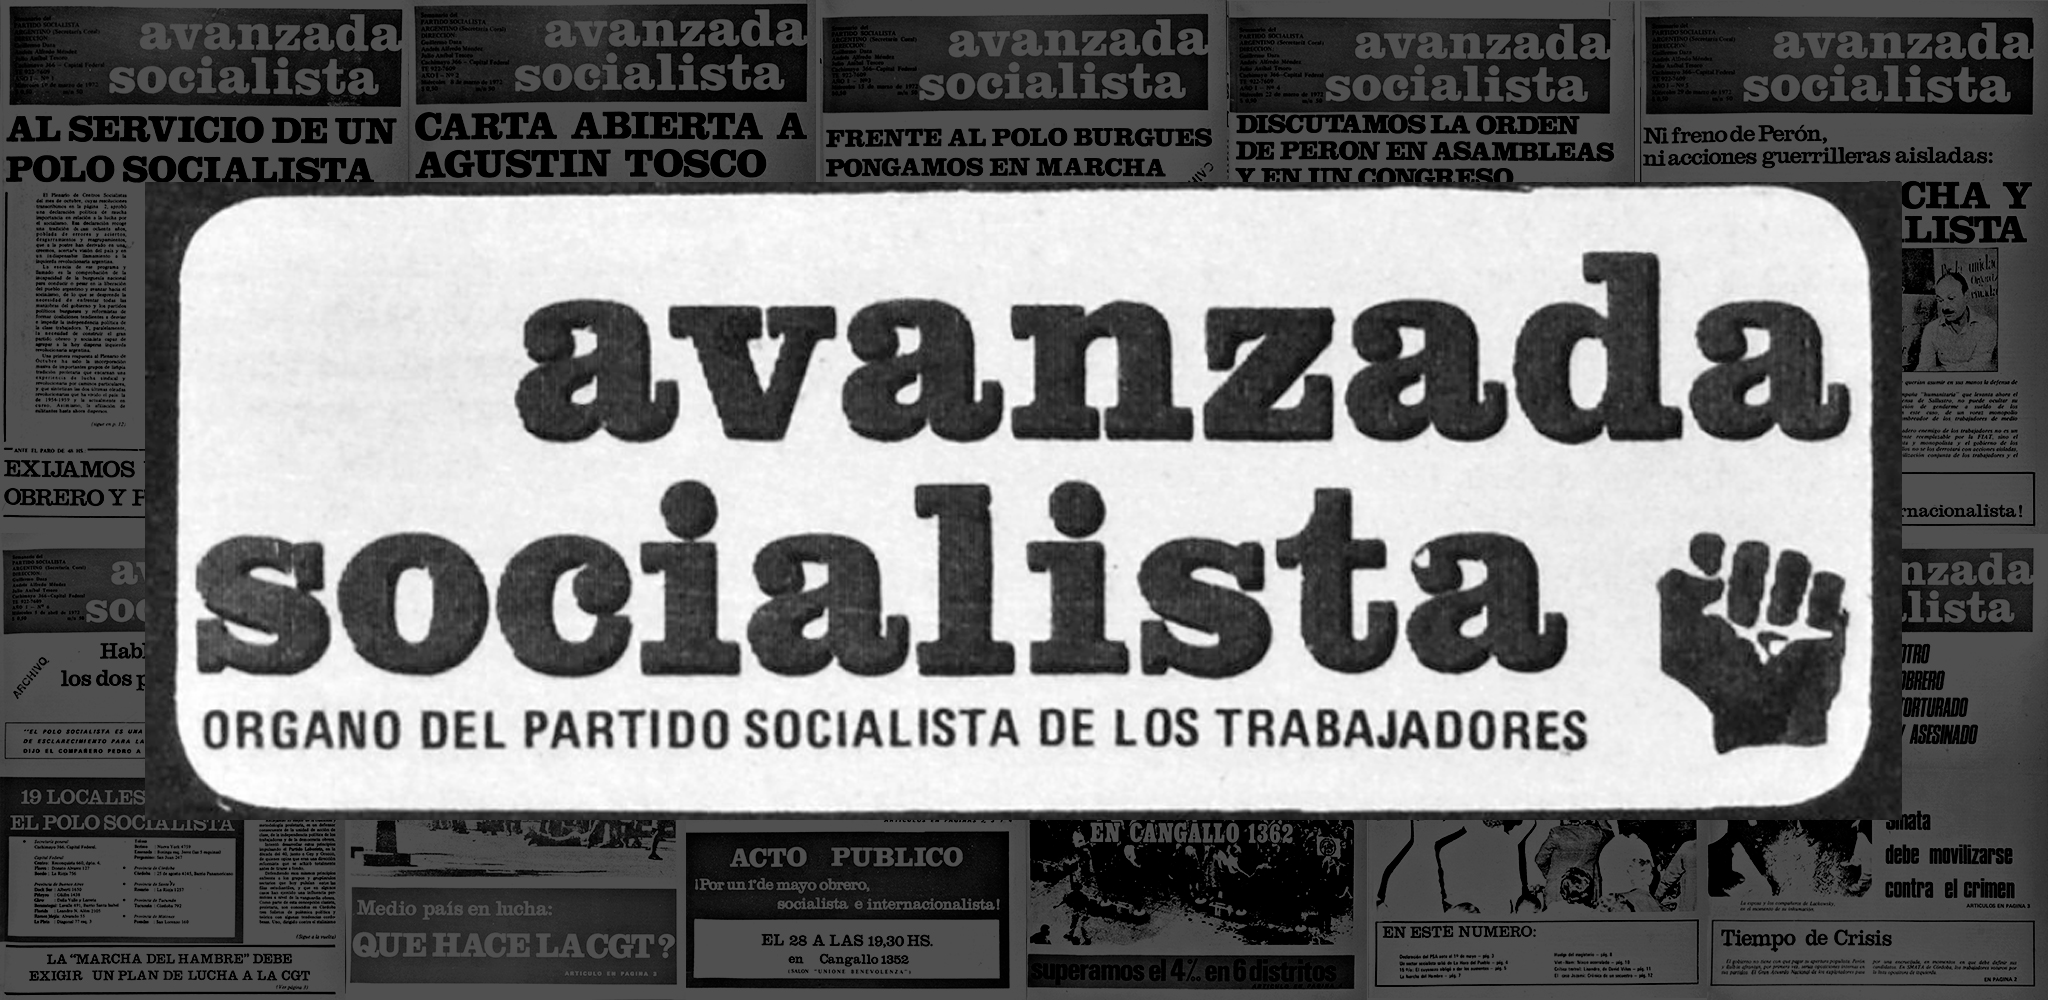 Avanzada Socialista (1972)